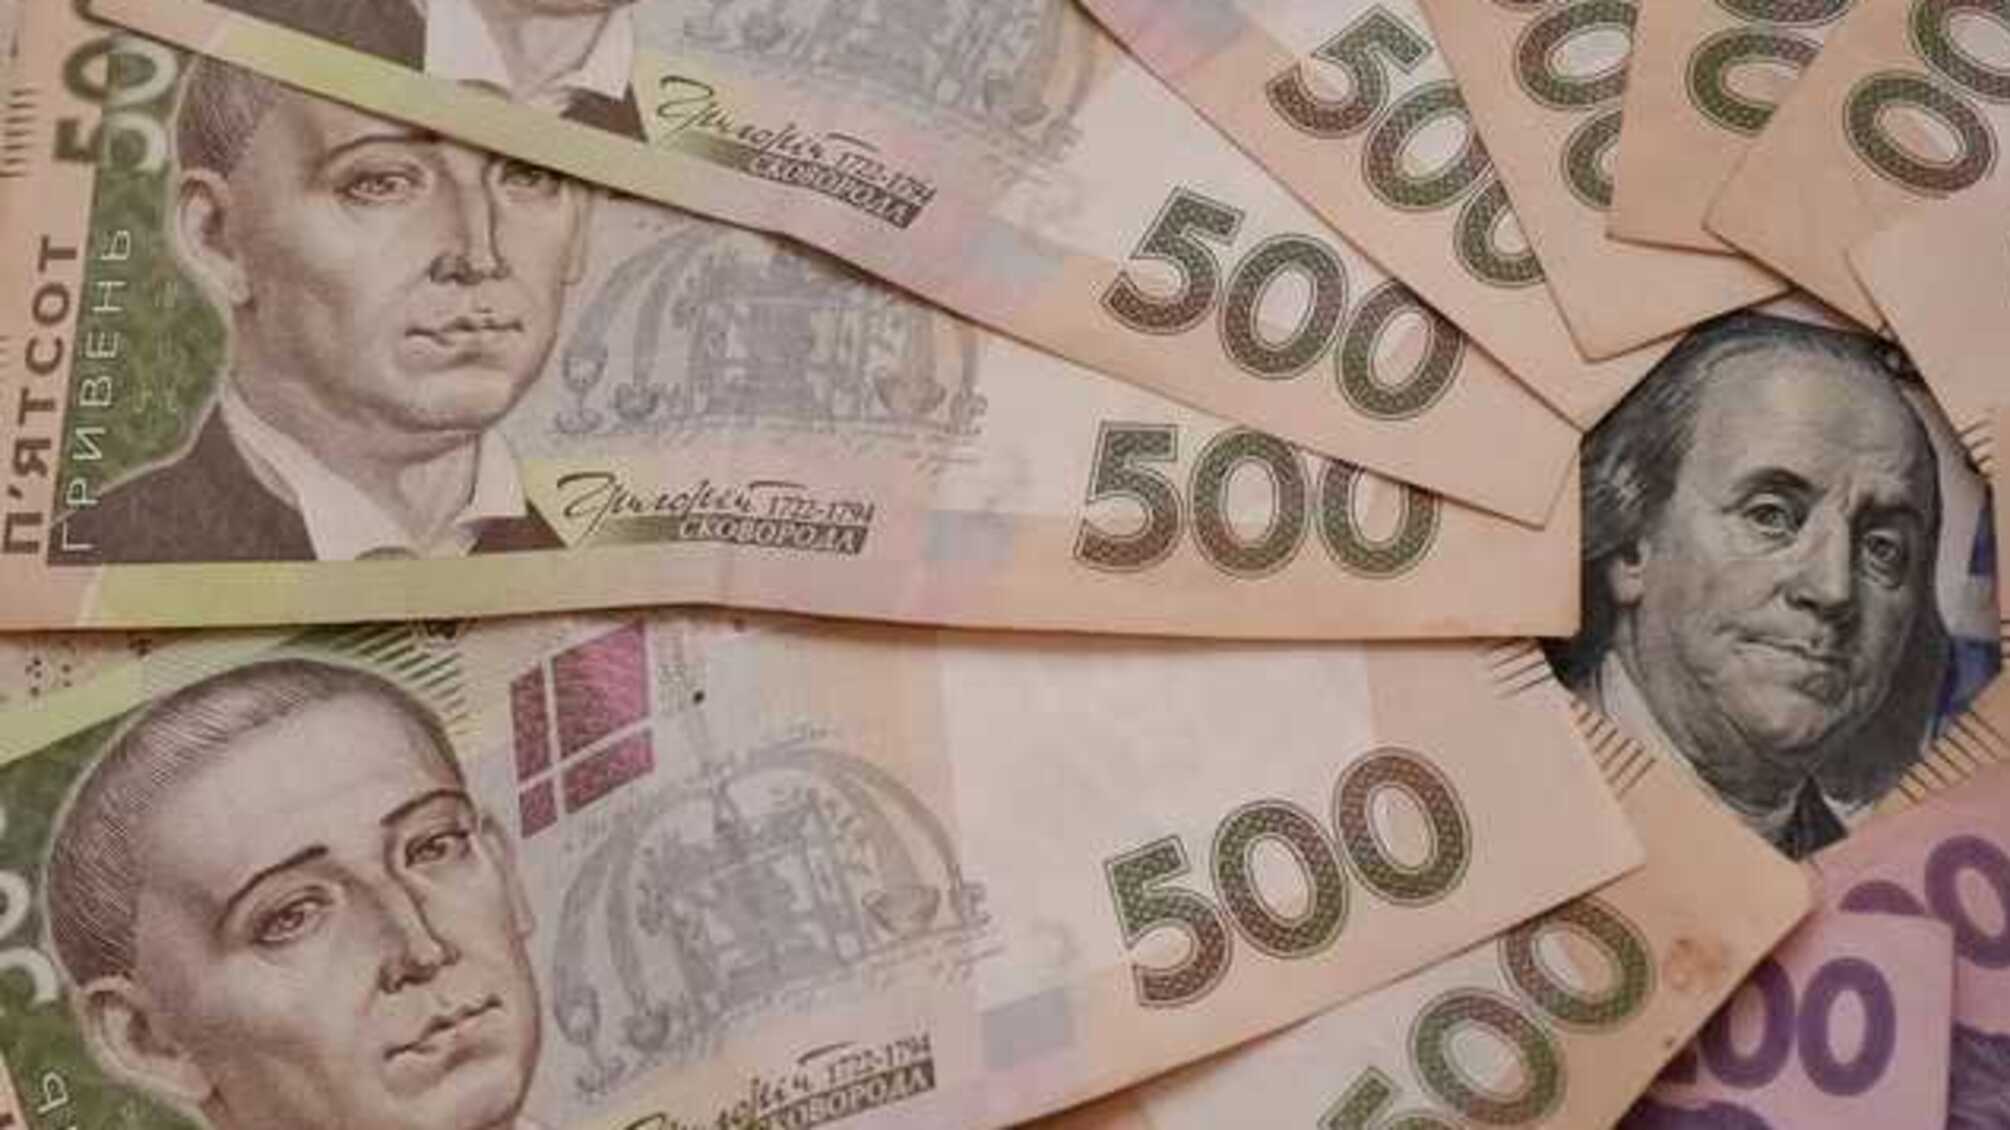 Пенсию более 10 тысяч гривен получают 260 тысяч украинцев